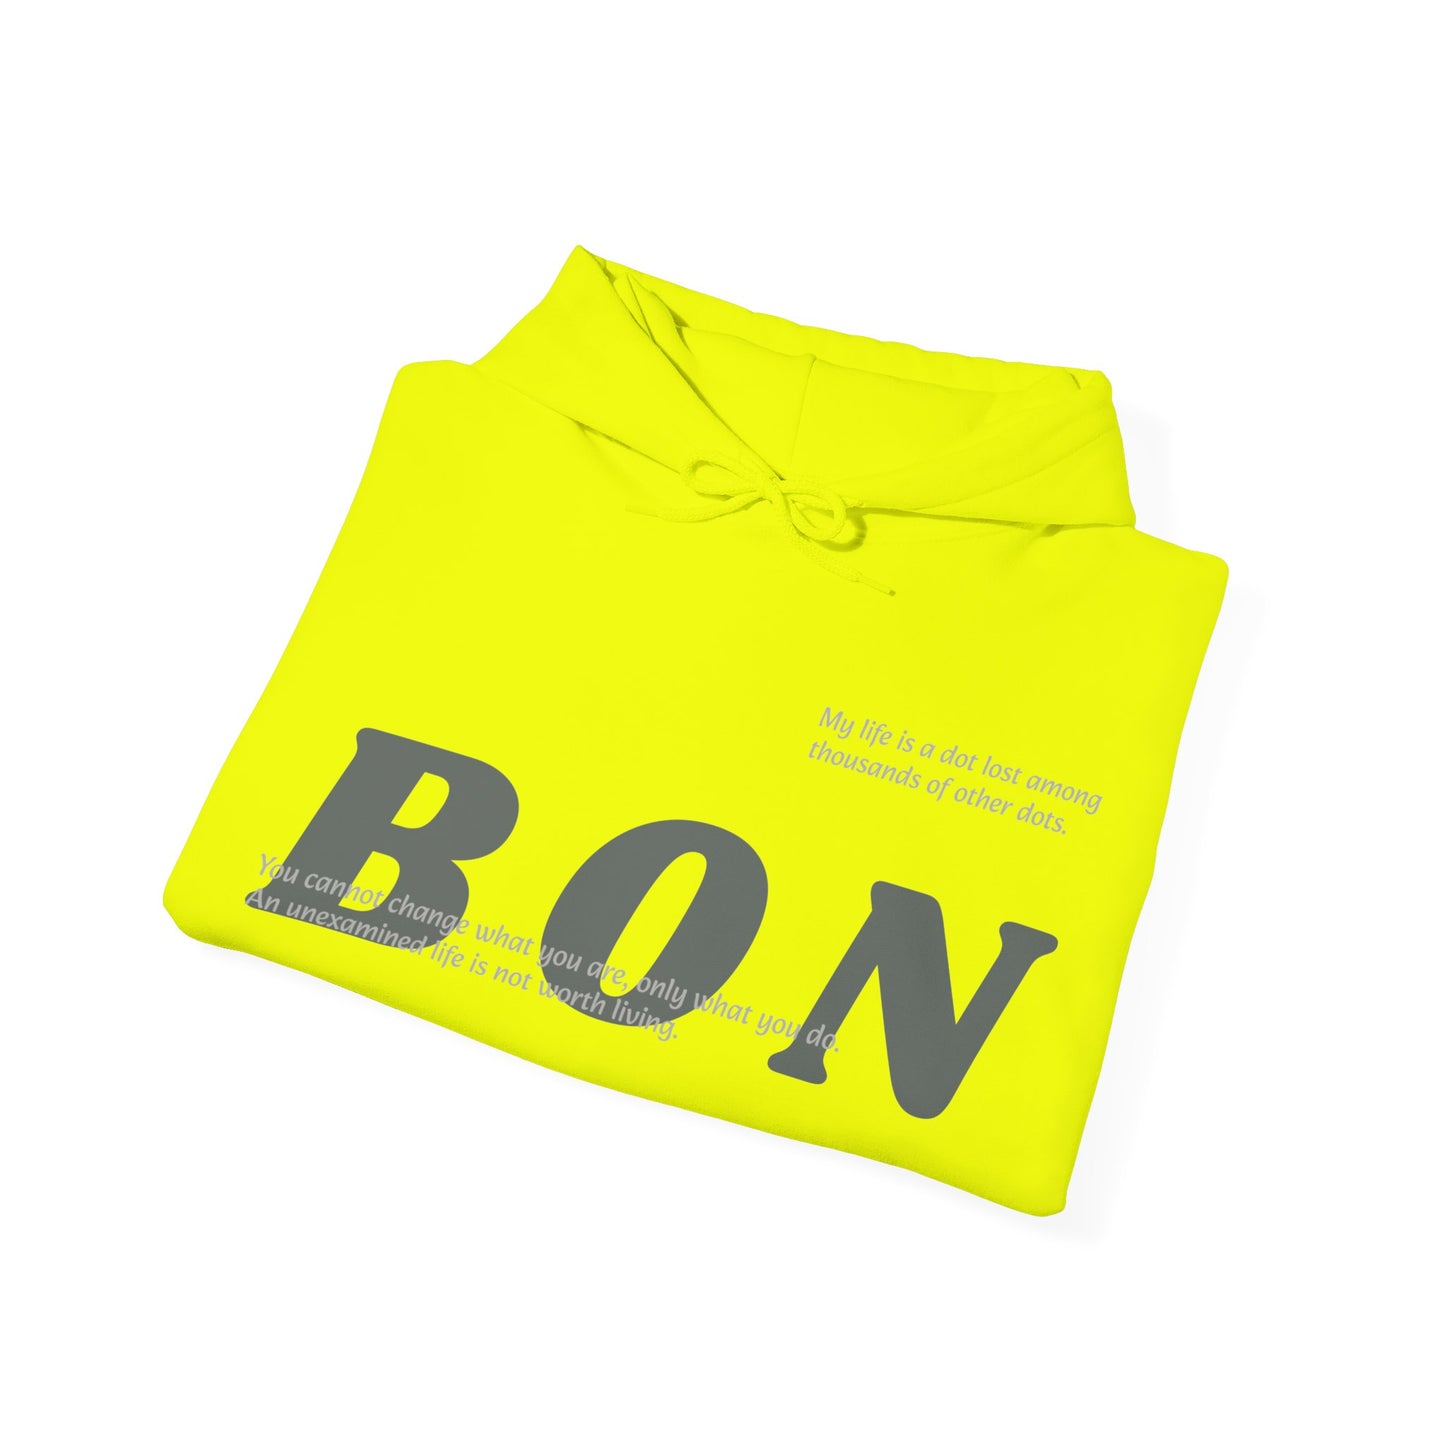 Bonsai Unisex Heavy Blend™ Hooded Sweatshirt